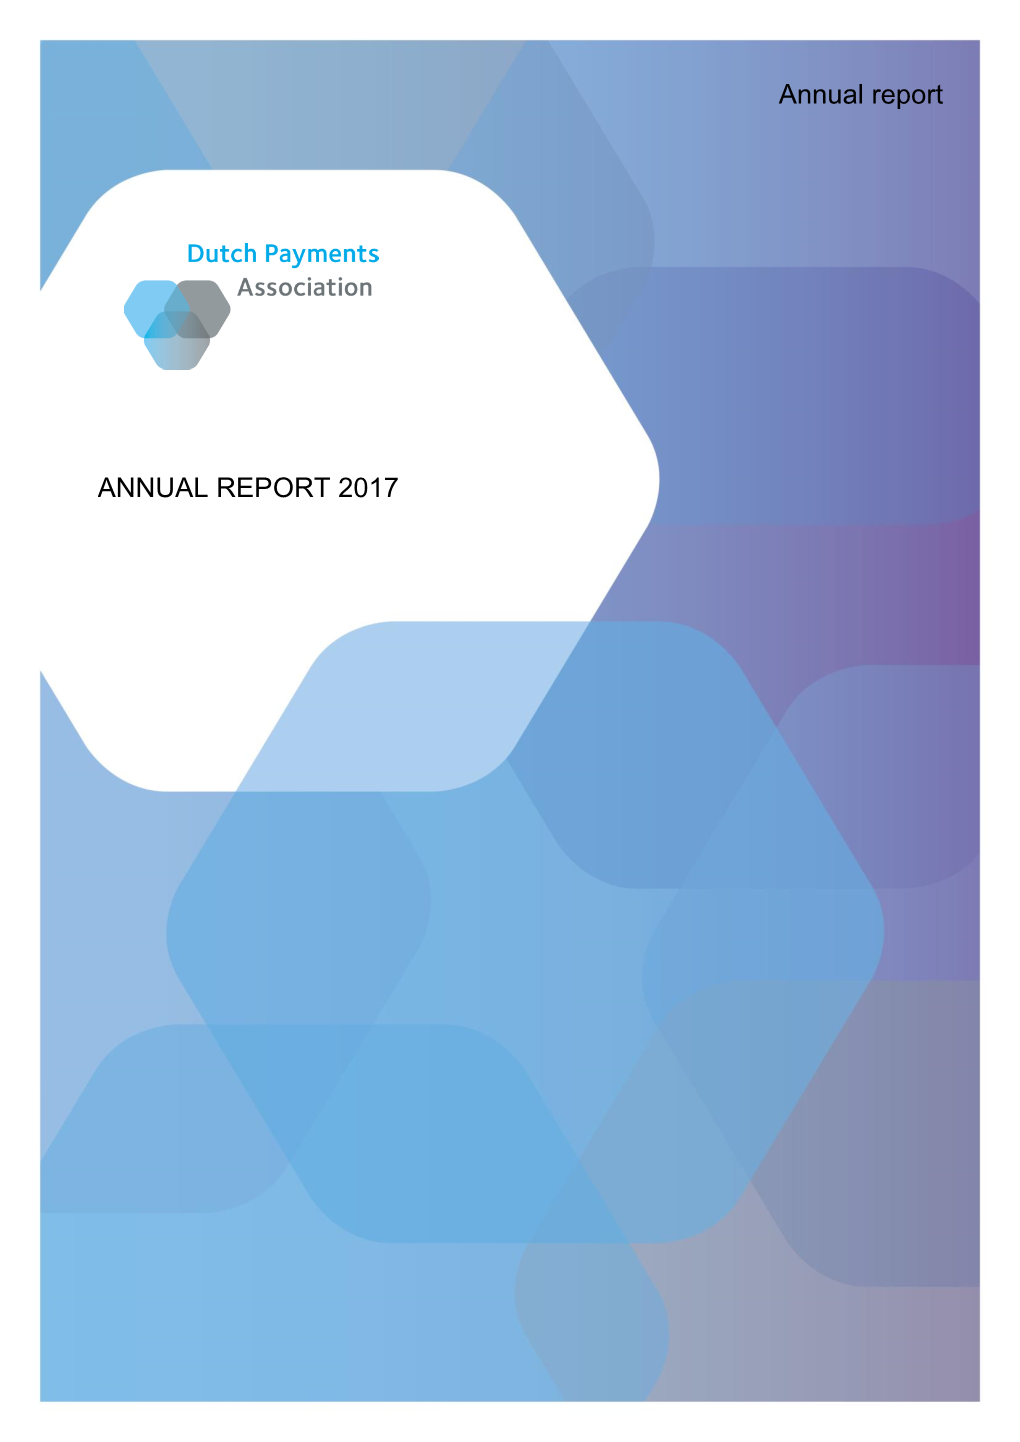 ANNUAL REPORT 2017 Annual Report